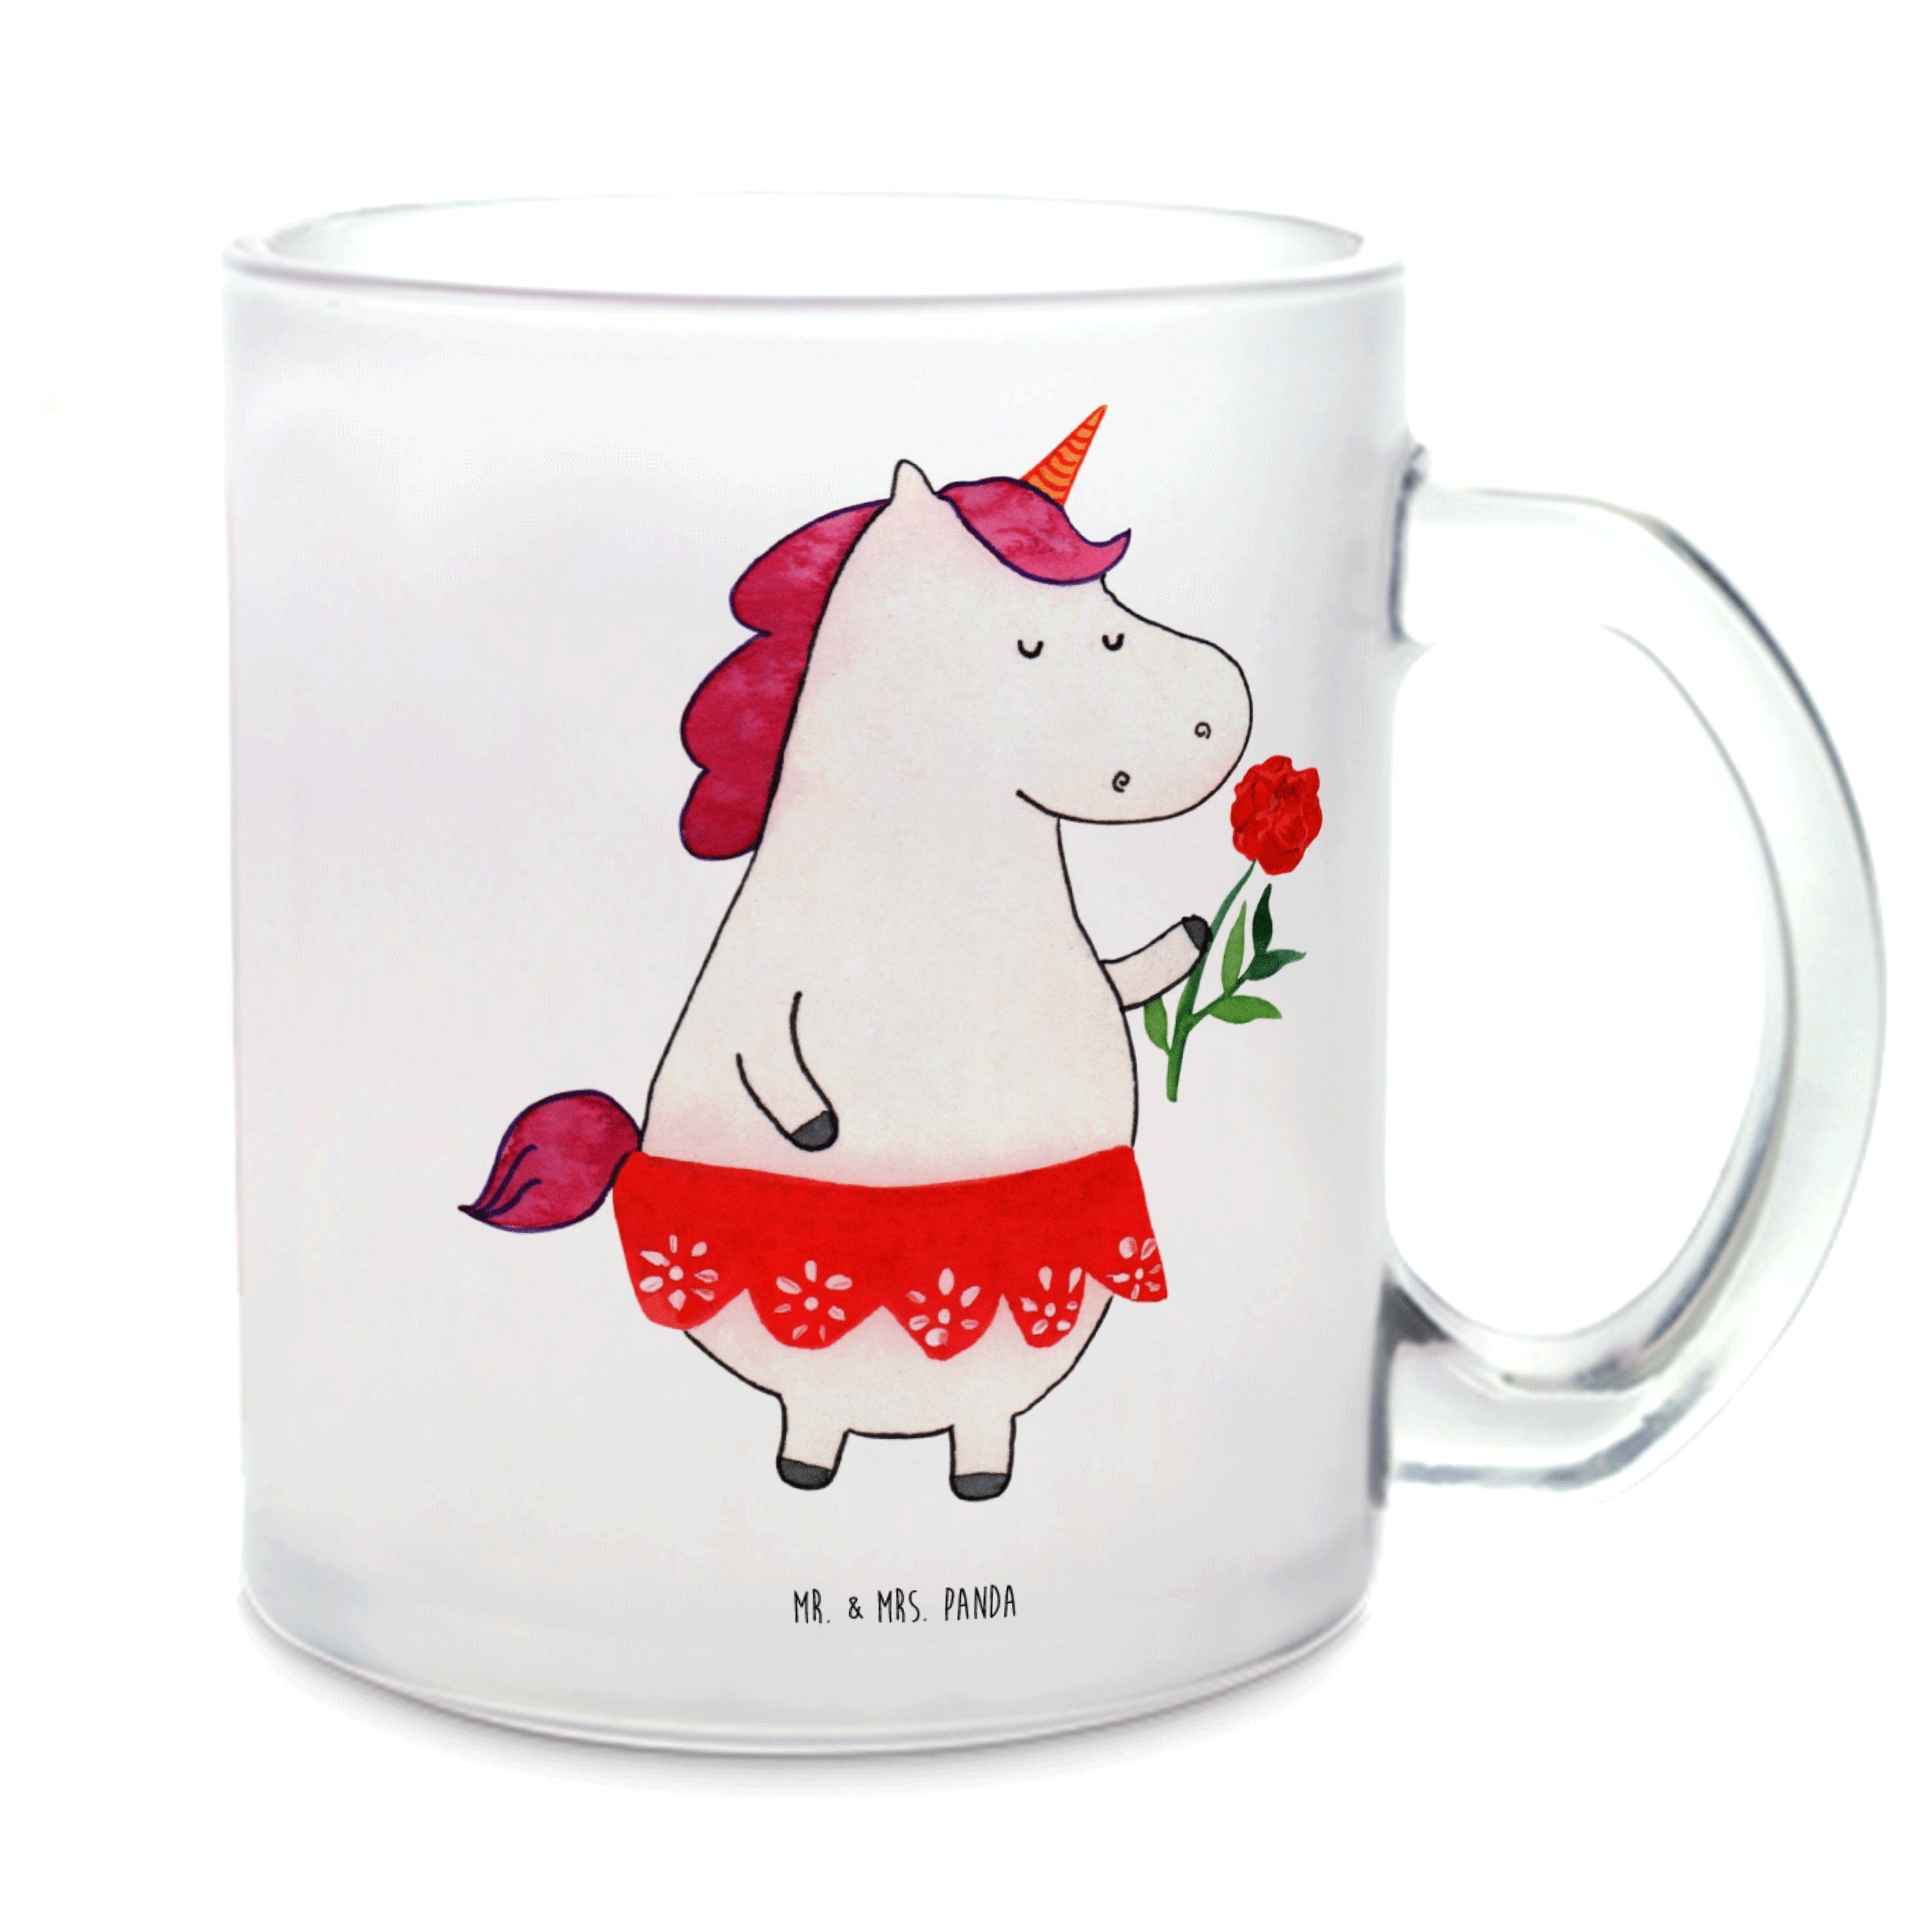 Mr. & Mrs. Panda Teeglas Einhorn Dame - Transparent - Geschenk, Teetasse aus Glas, Einhorn Dek, Premium Glas, Liebevolle Gestaltung